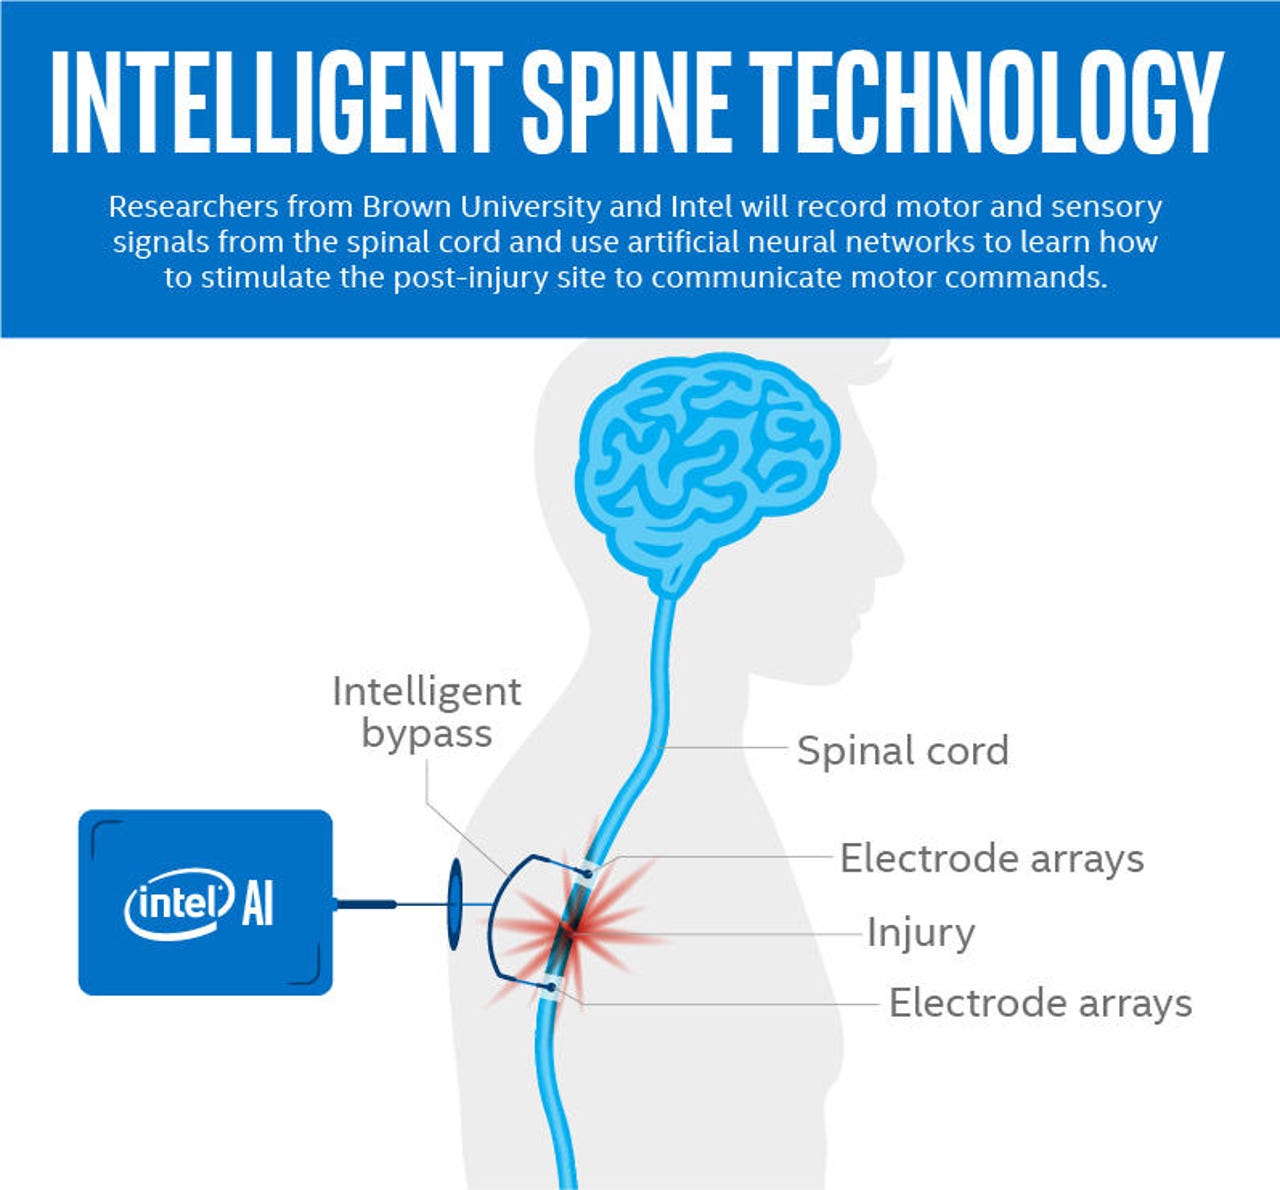 spine-intelligence-graphic-explainer-final-b-003.jpg